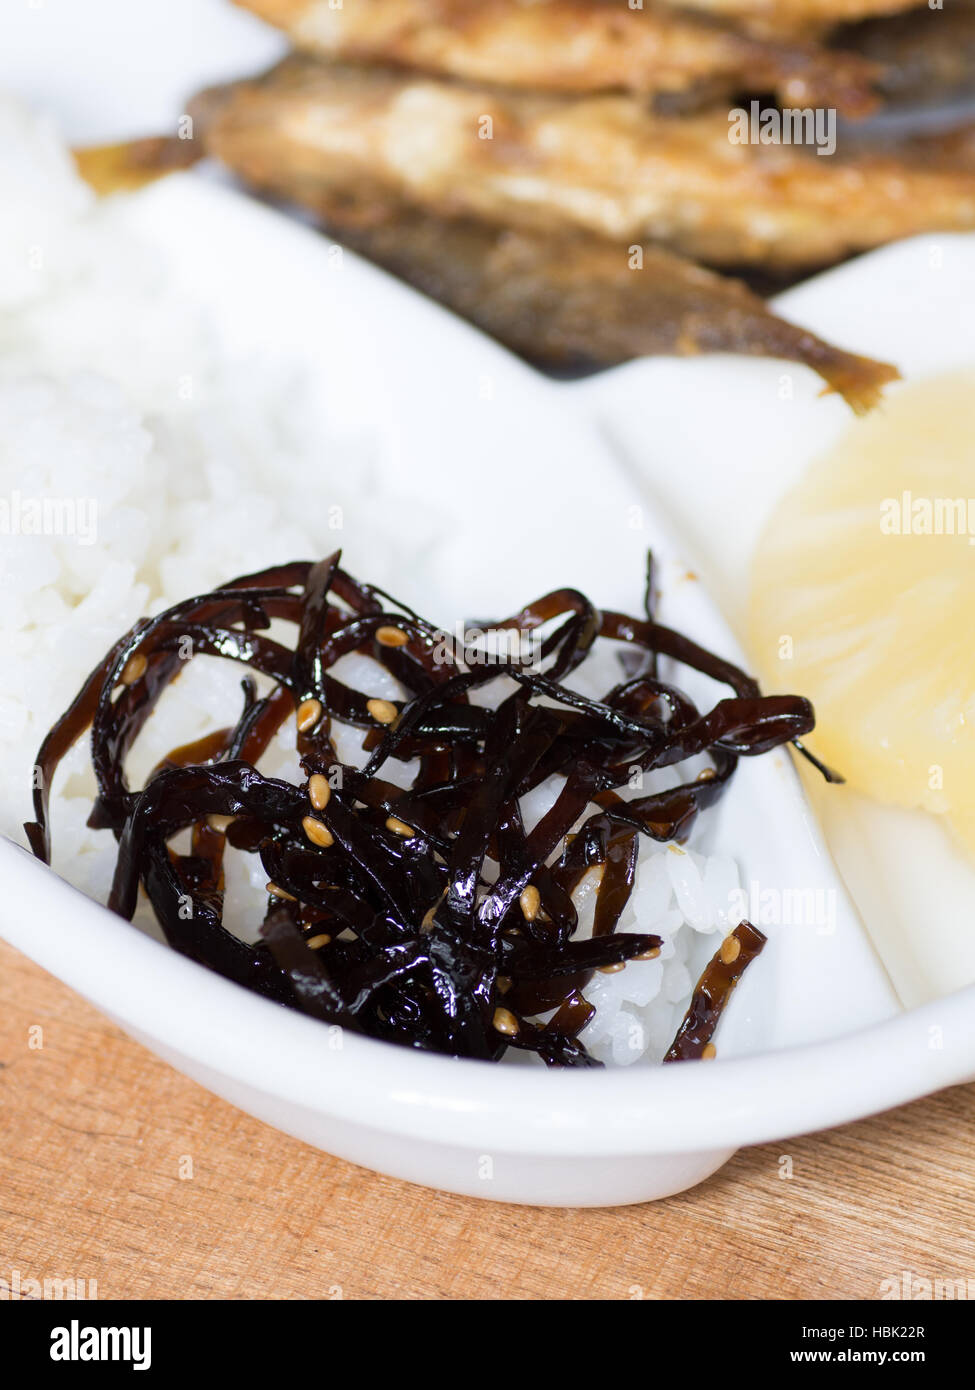 Japanese cuisine, coocked seaweeds called Kombu No Tsukudani on the dish Stock Photo